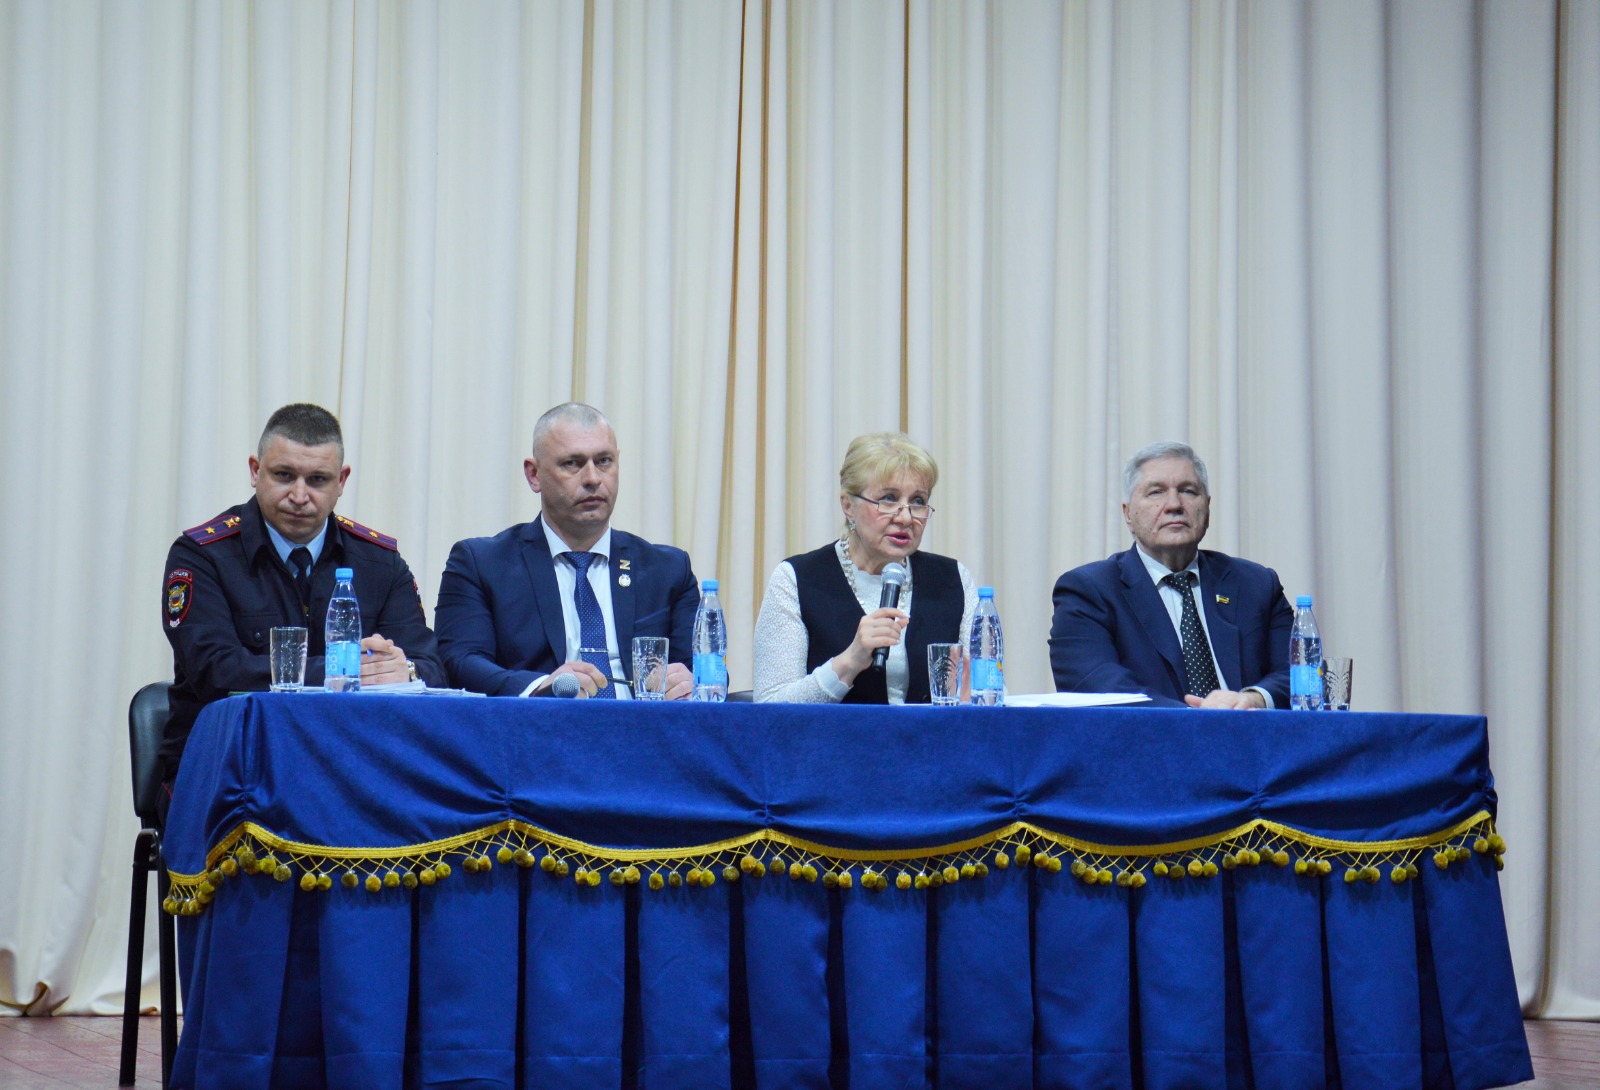 Сергей Михалев: «В Белокалитвинском районе удалось обеспечить экономическую стабильность, создать условия для дальнейшего развития» 